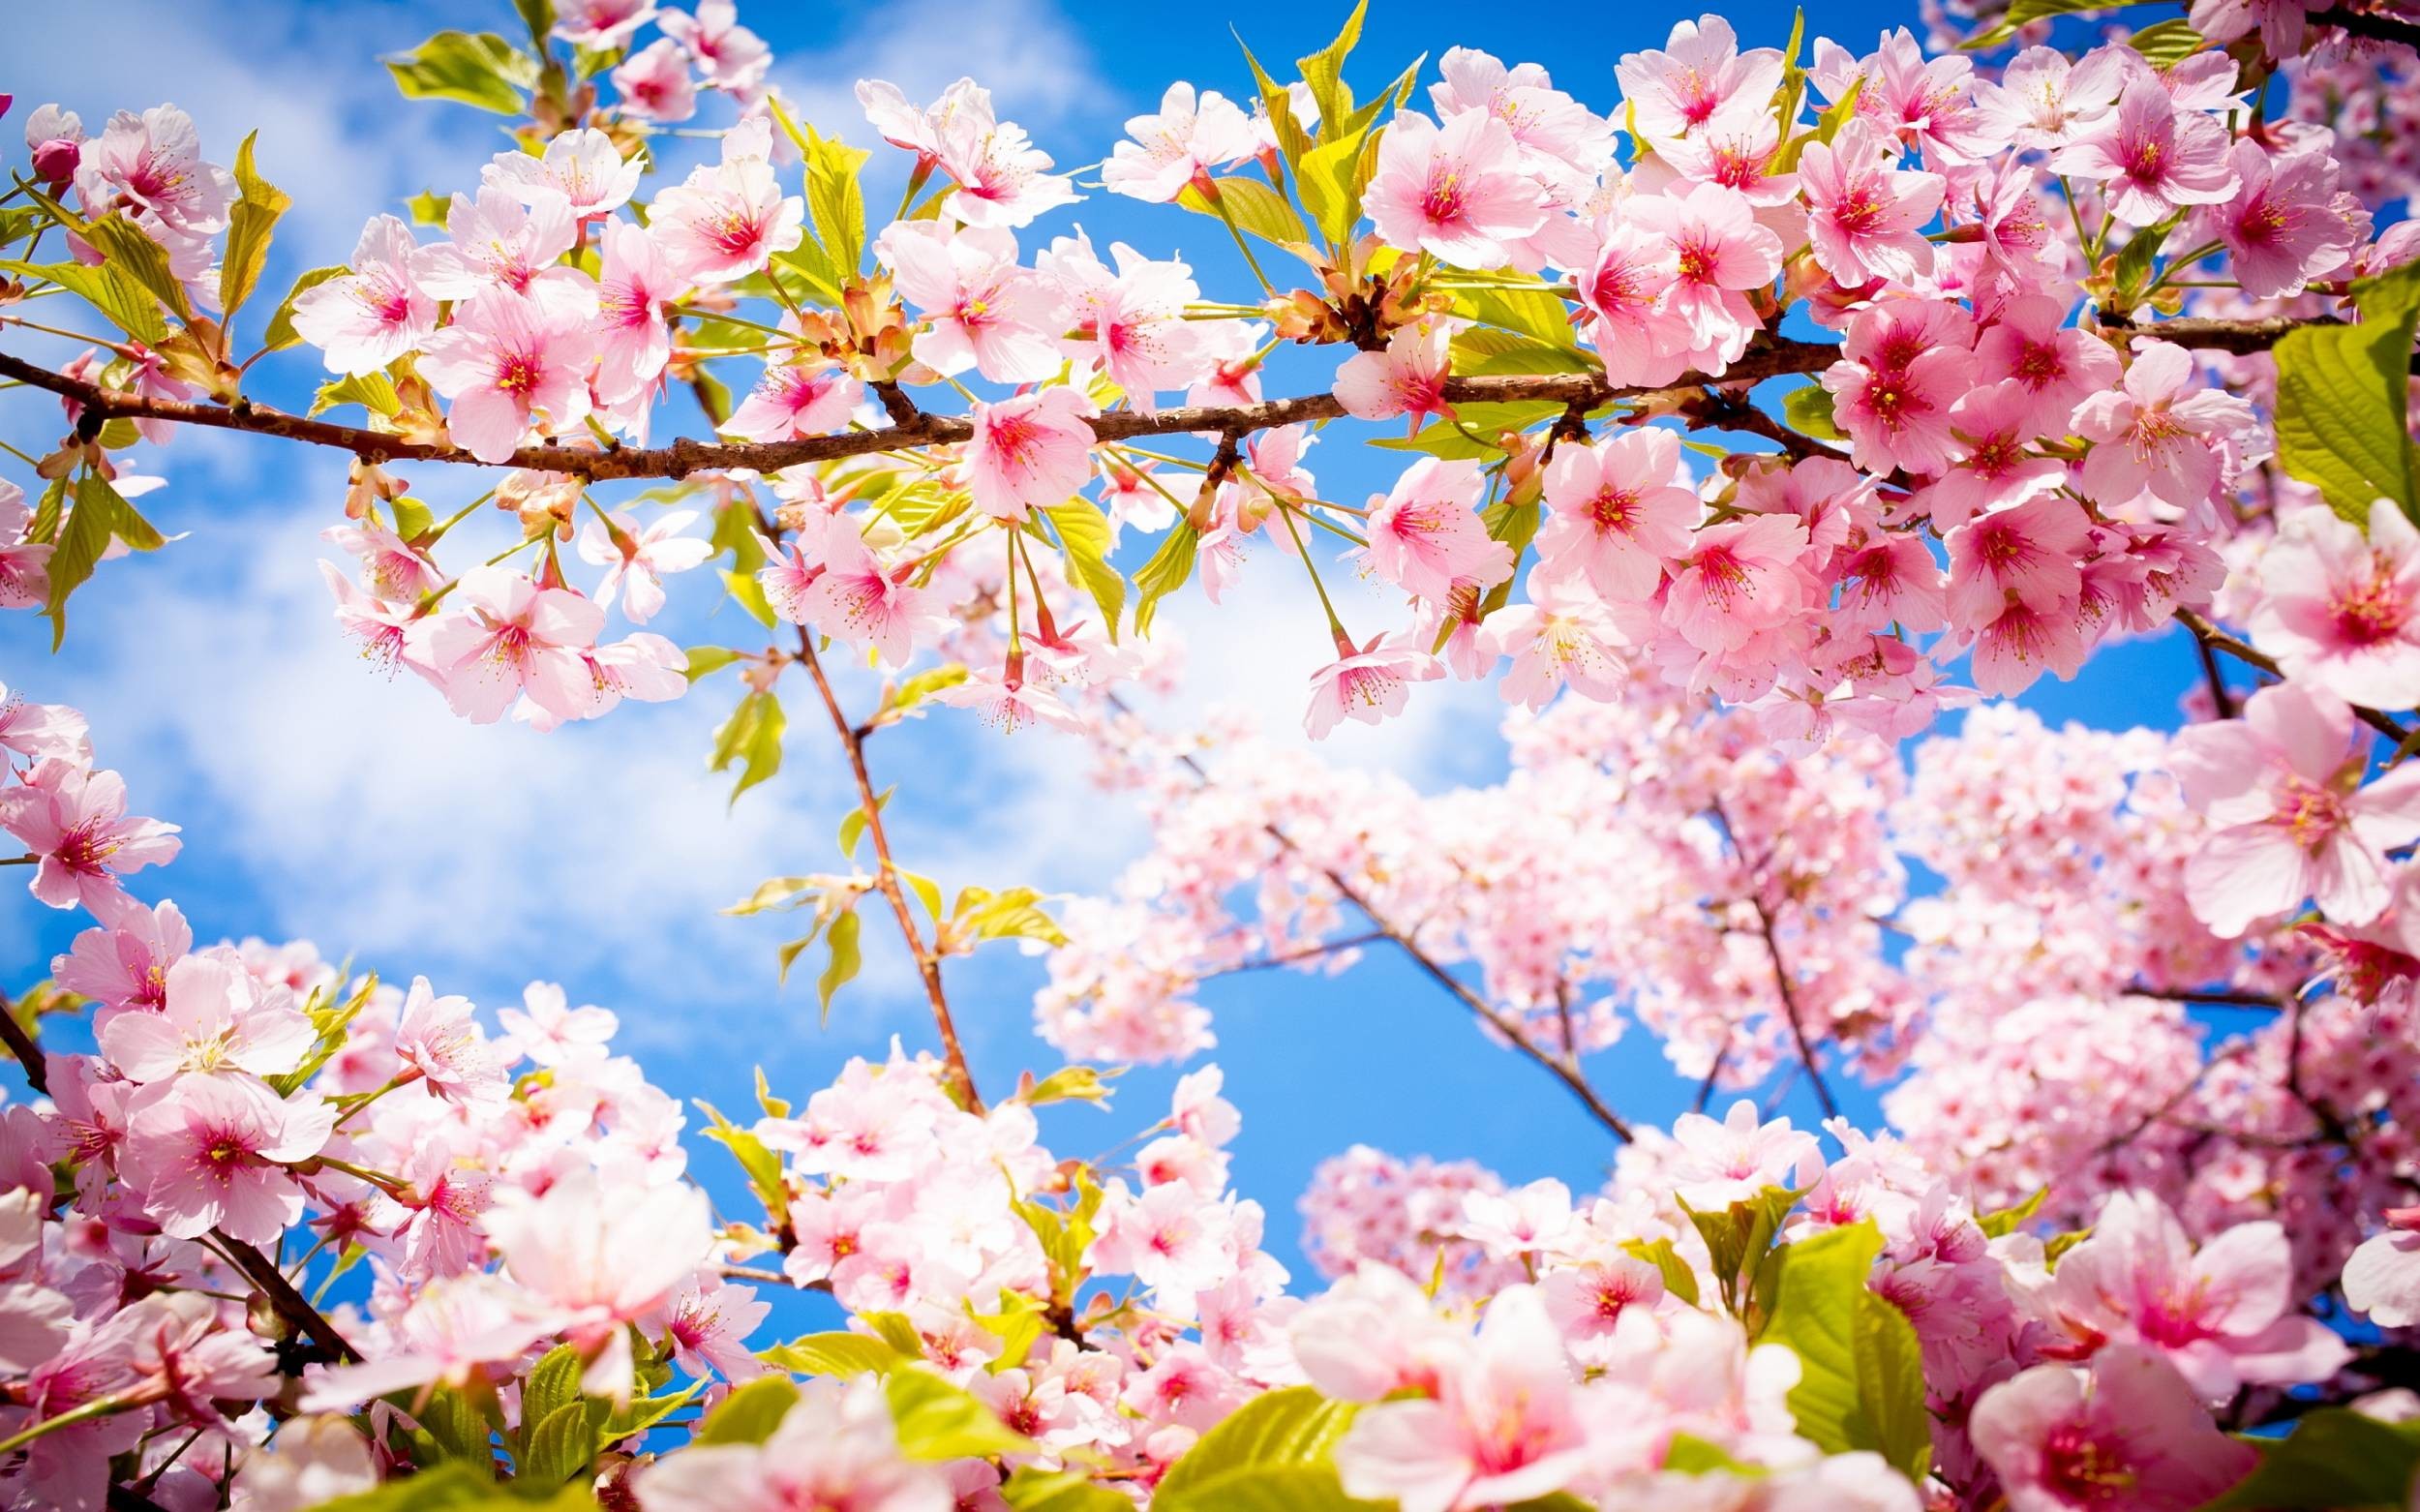 Hãy cùng chiêm ngưỡng chùm thơ về mùa xuân tuyệt đẹp, những câu văn tinh tế phản ánh hết điệu nhịp của thiên nhiên trong mùa xuân. Hình ảnh sẽ đưa bạn đến với một thế giới tràn đầy sắc màu, sự tươi trẻ và hạnh phúc.